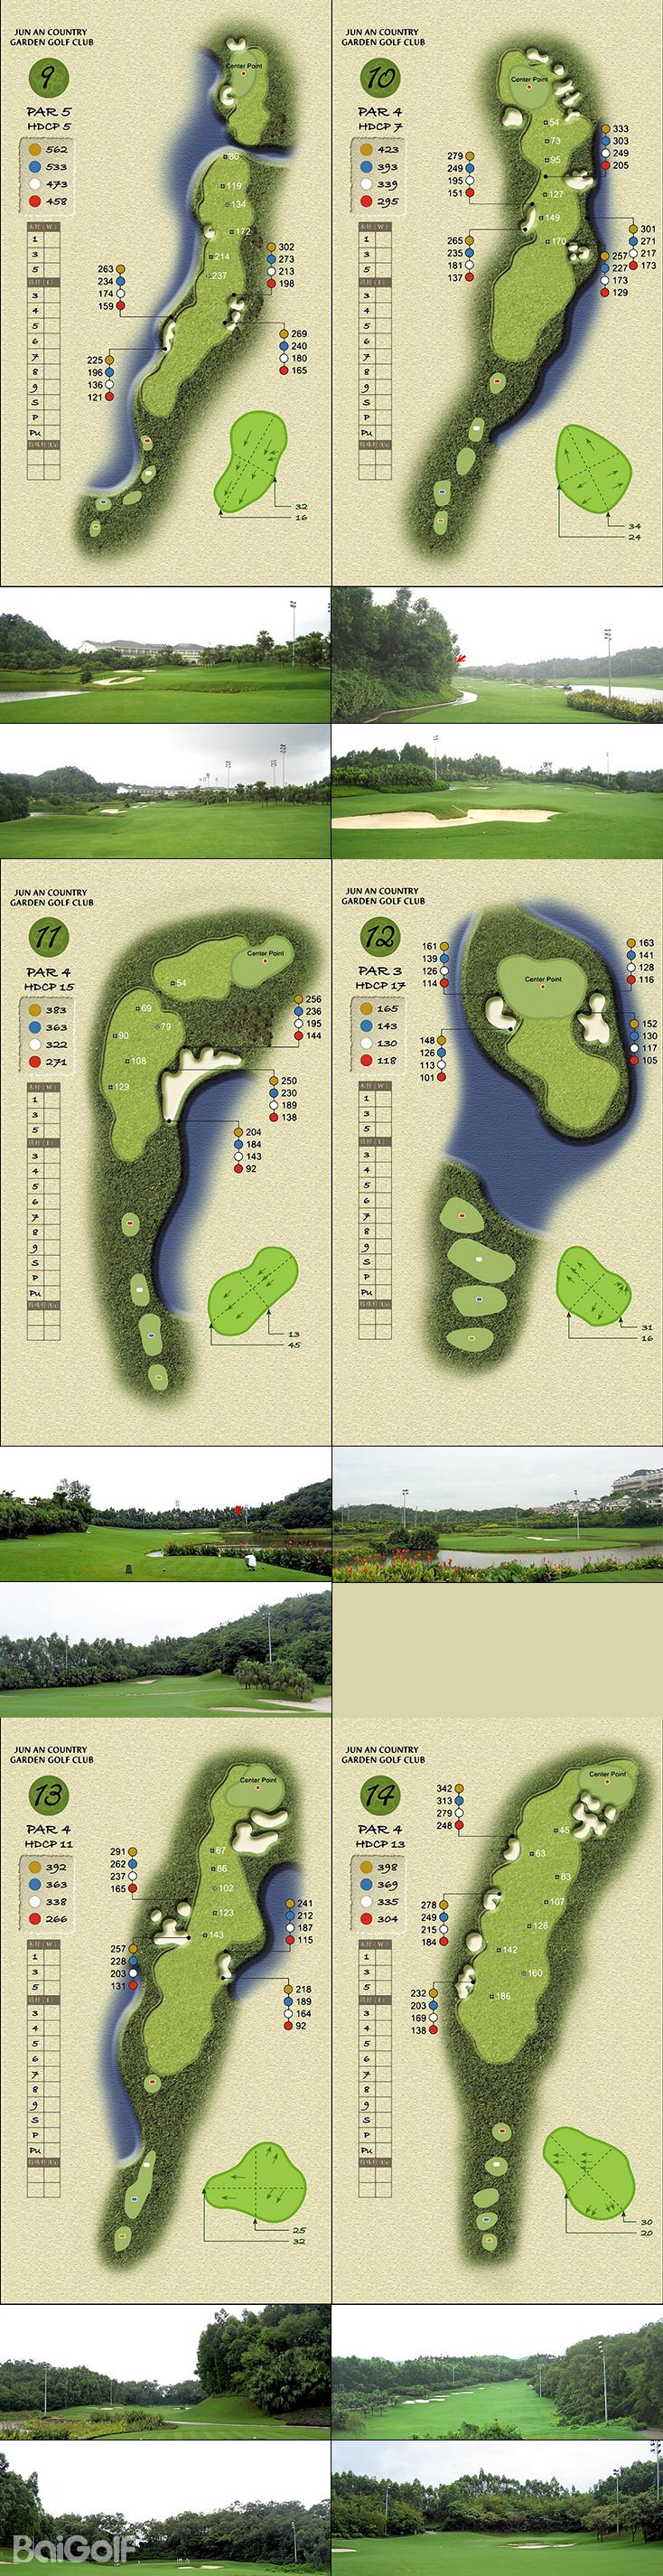 均安碧桂園高爾夫球道圖